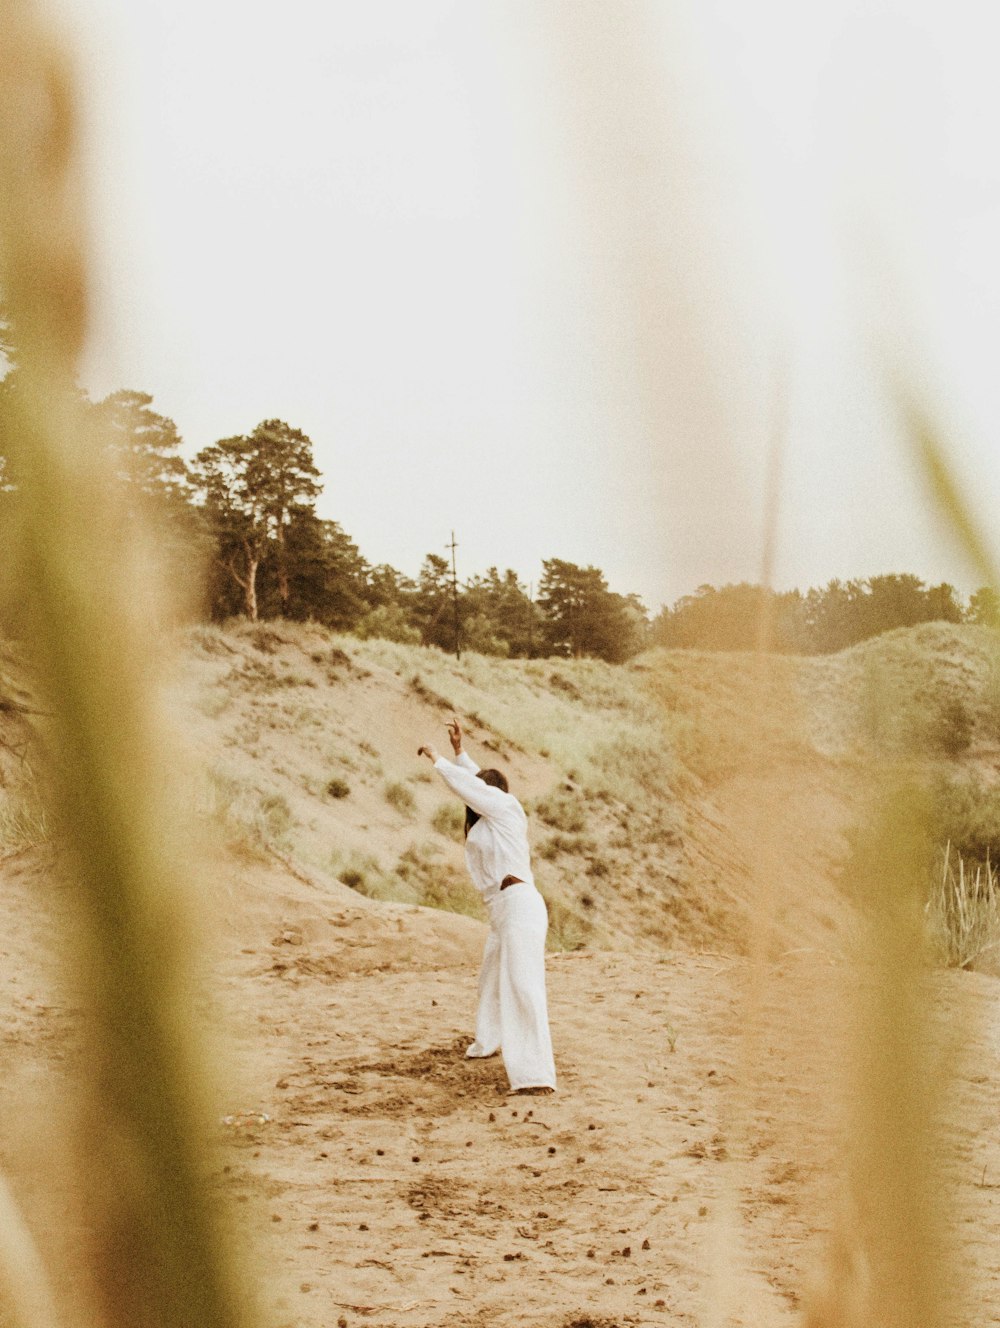 women's white long-sleeved dress during daytime